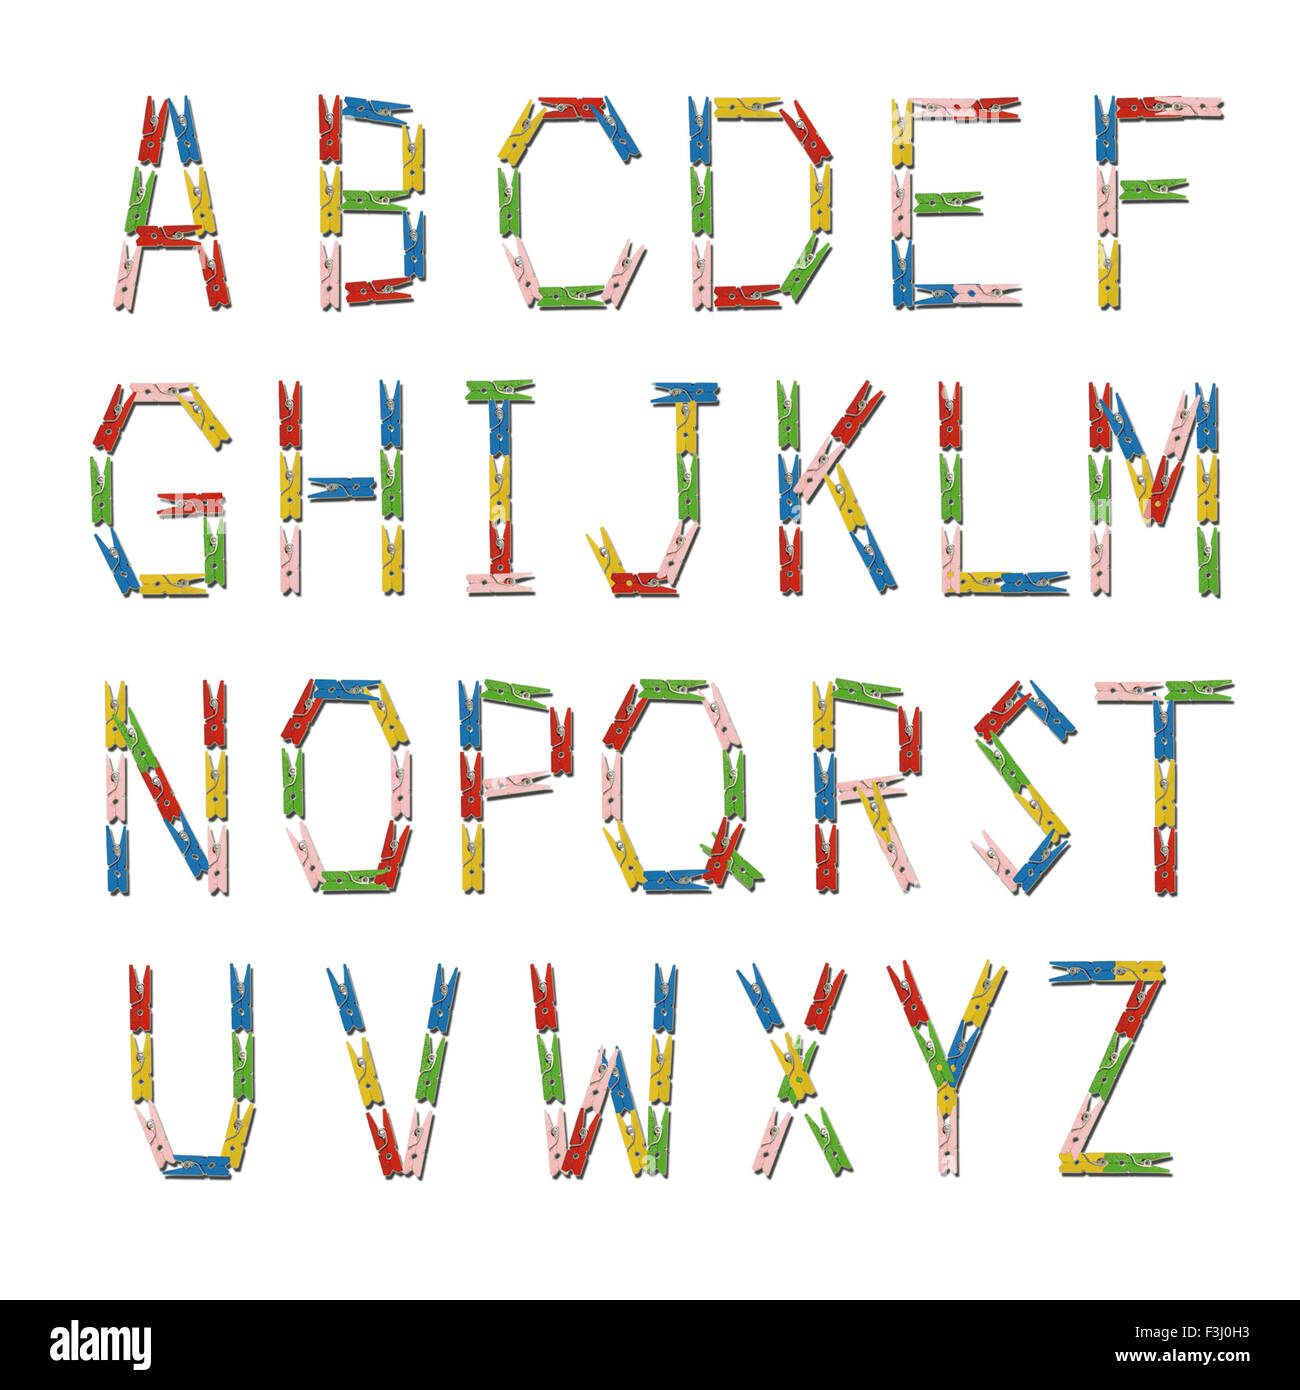 ABC Englisch Alphabet aus bunten Holz Wäscheklammer gemacht Stockfotografie  - Alamy